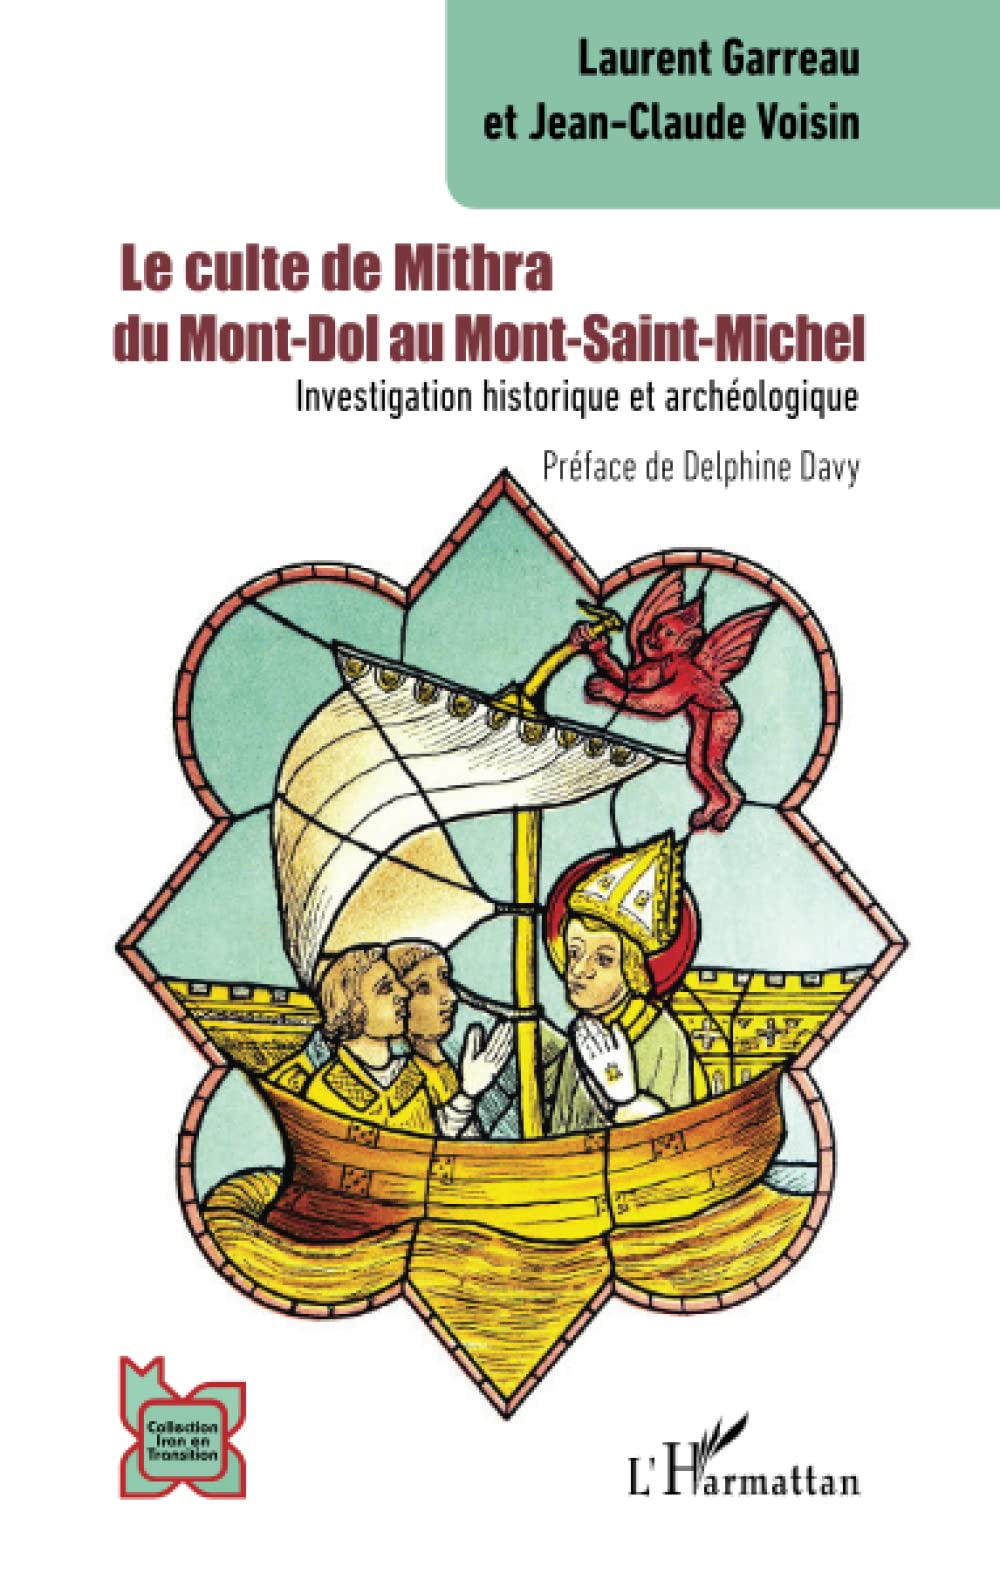 Le culte de Mithra du Mont-Dol au Mont-Saint-Michel. Investigation historique et archéologique, 2023, 122 p.